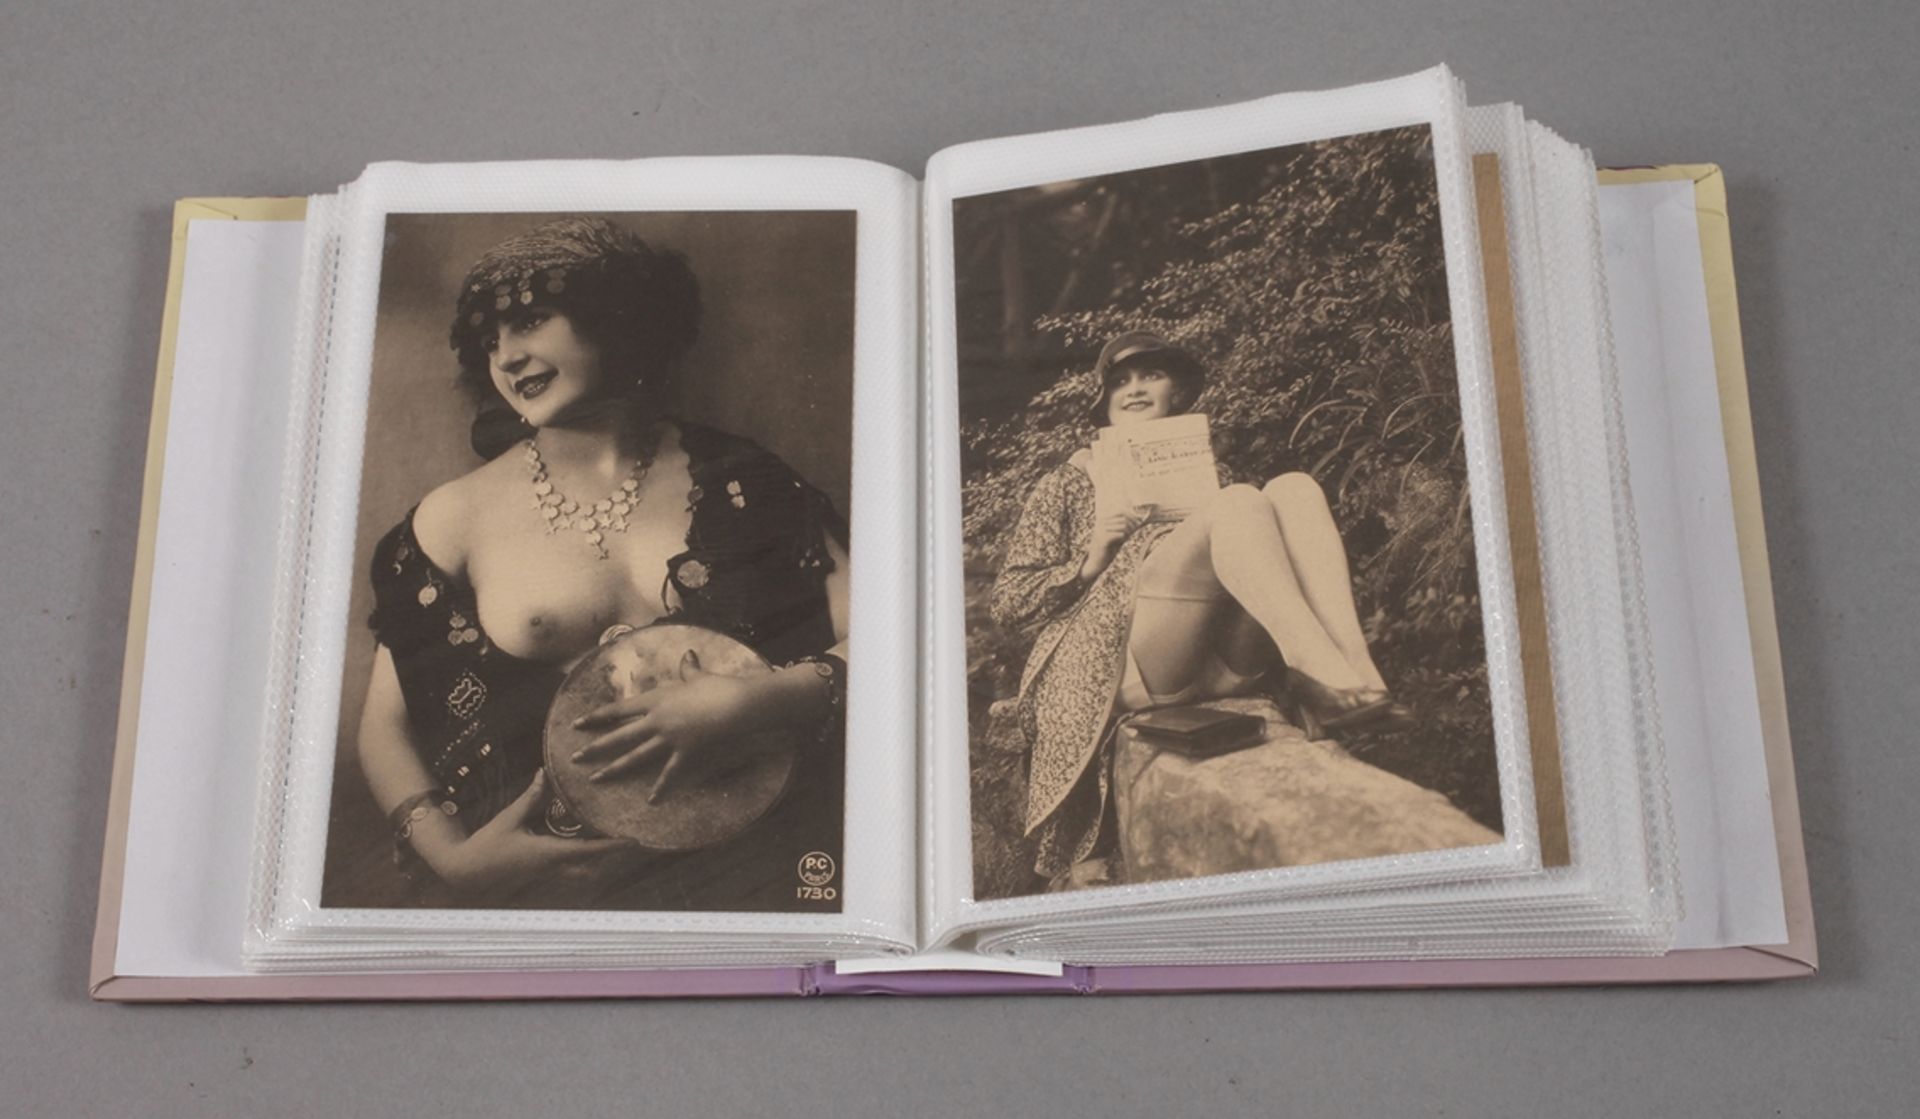 Erotische Postkartenundatiert, ca. 100 Postkarten mit erotischen Motiven der 1920er und 1930er